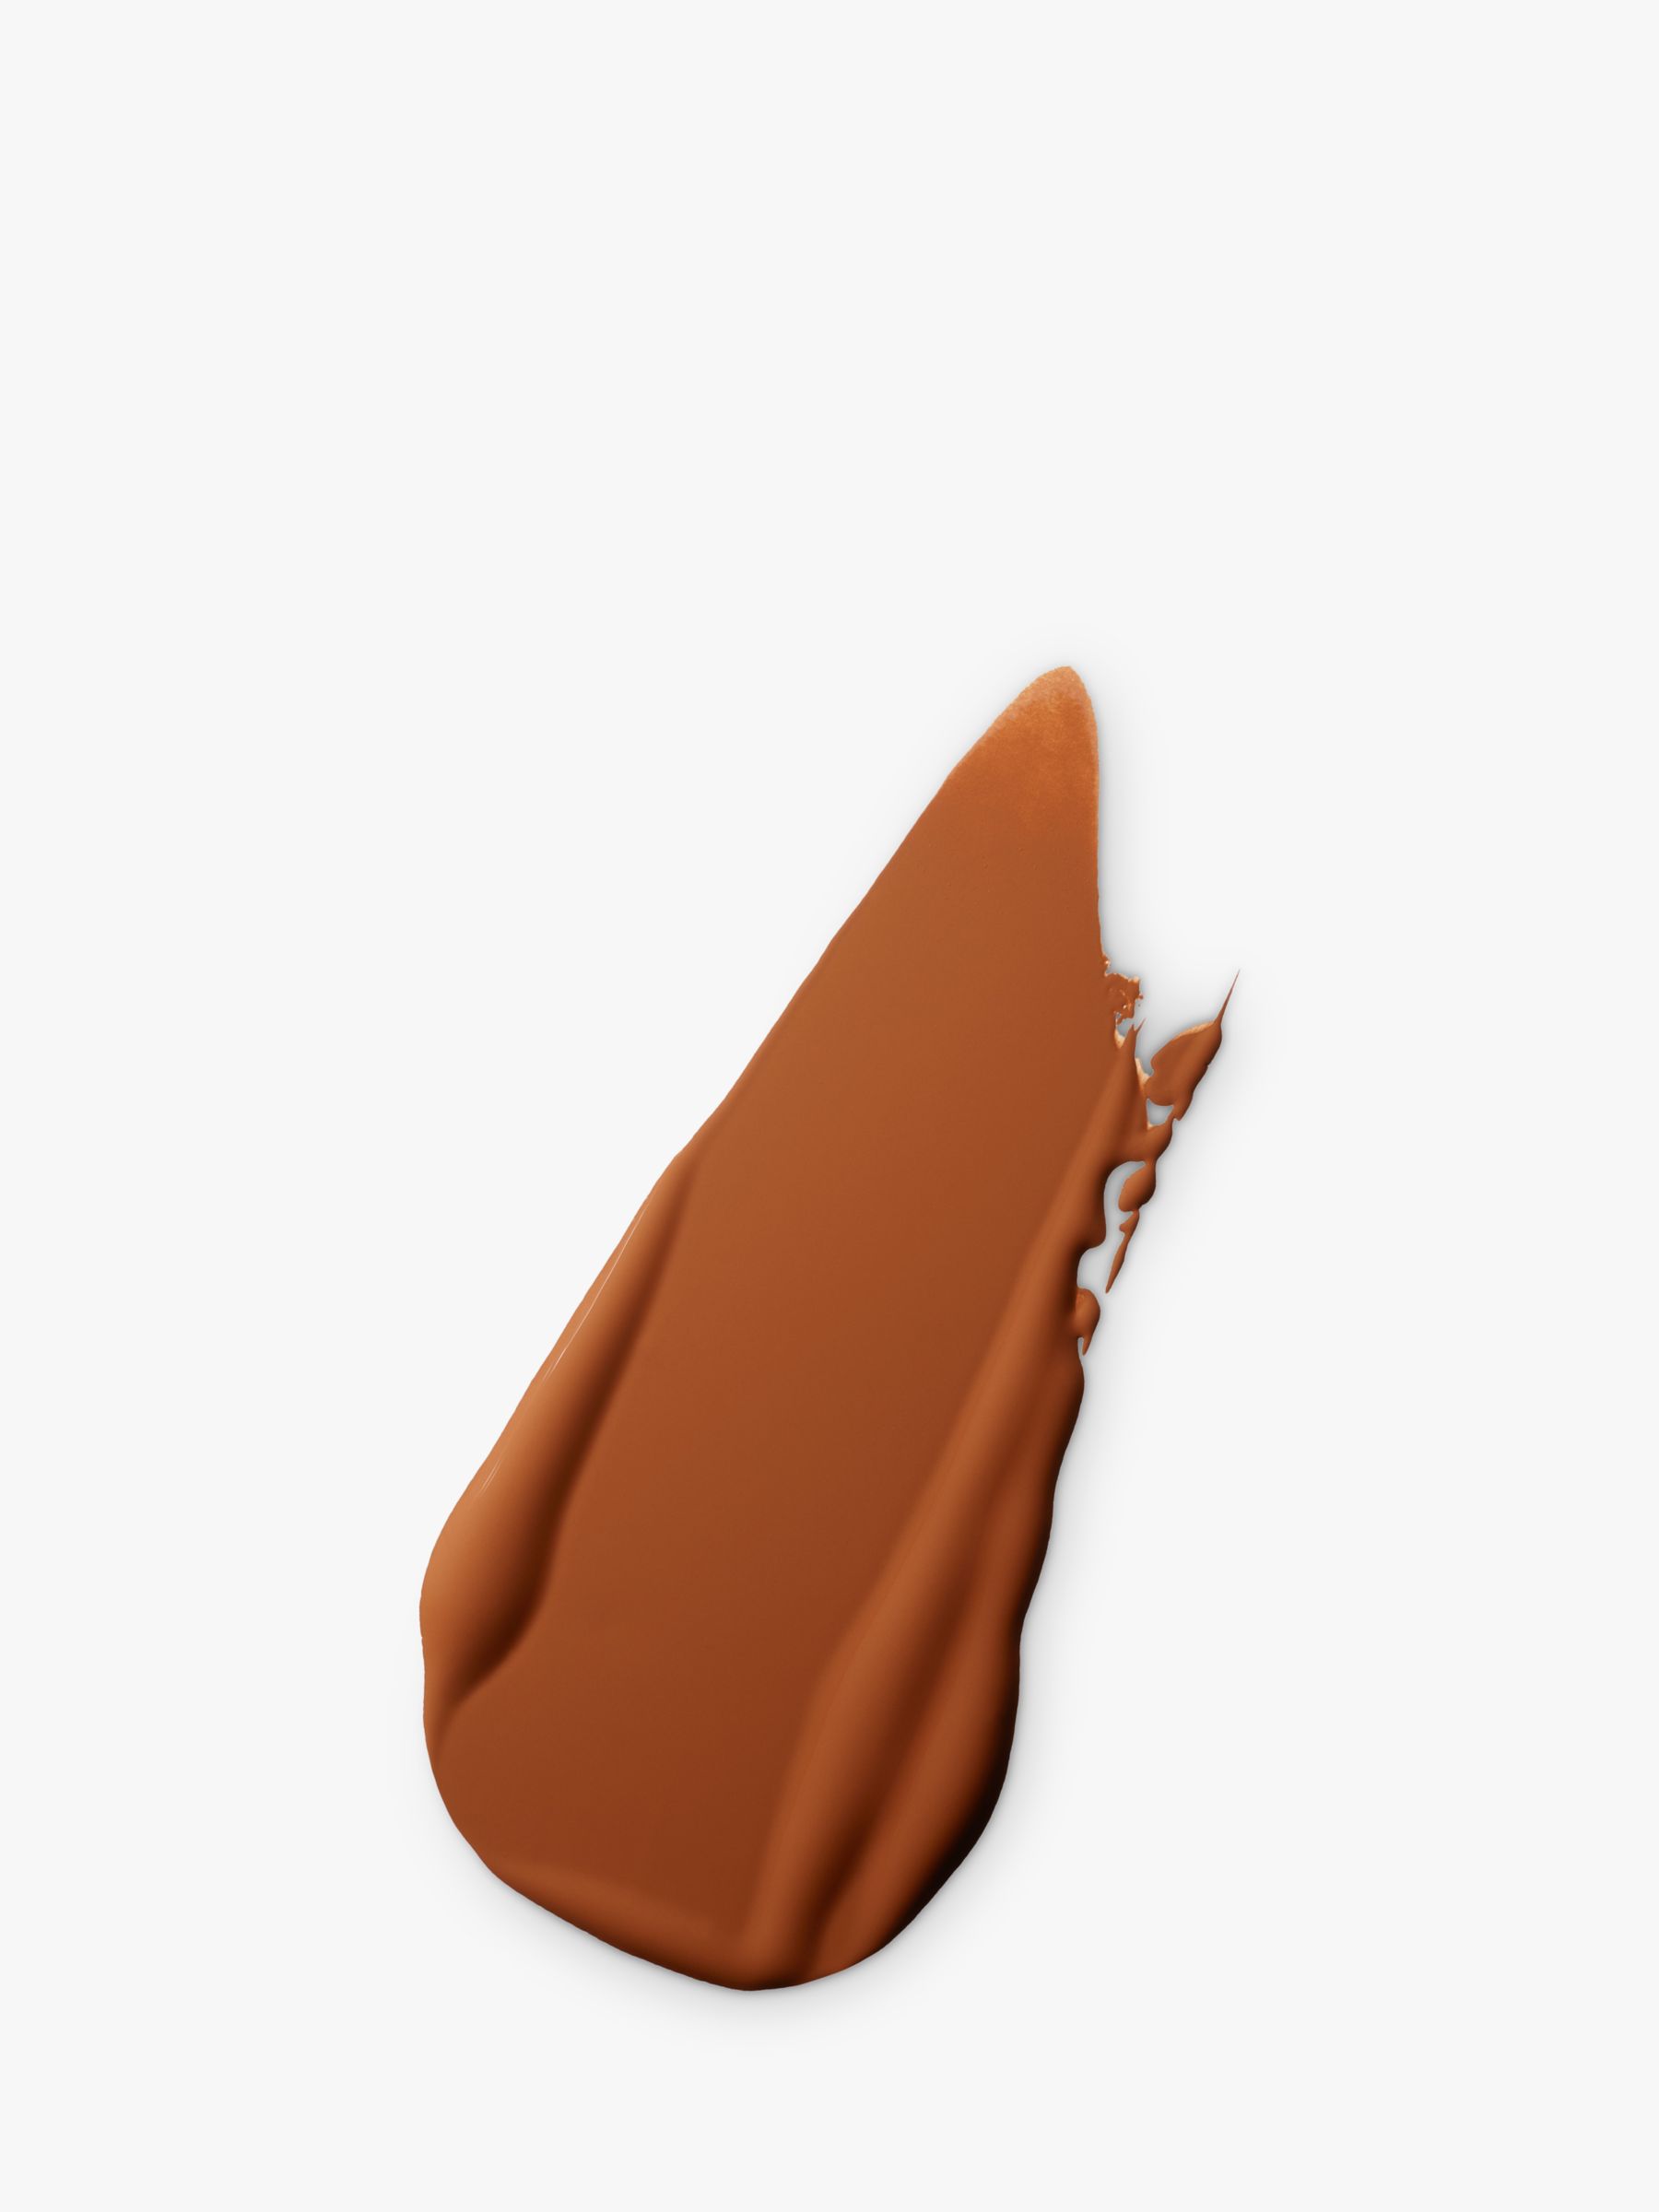 MAC Pro Longwear Concealer, NW45 2